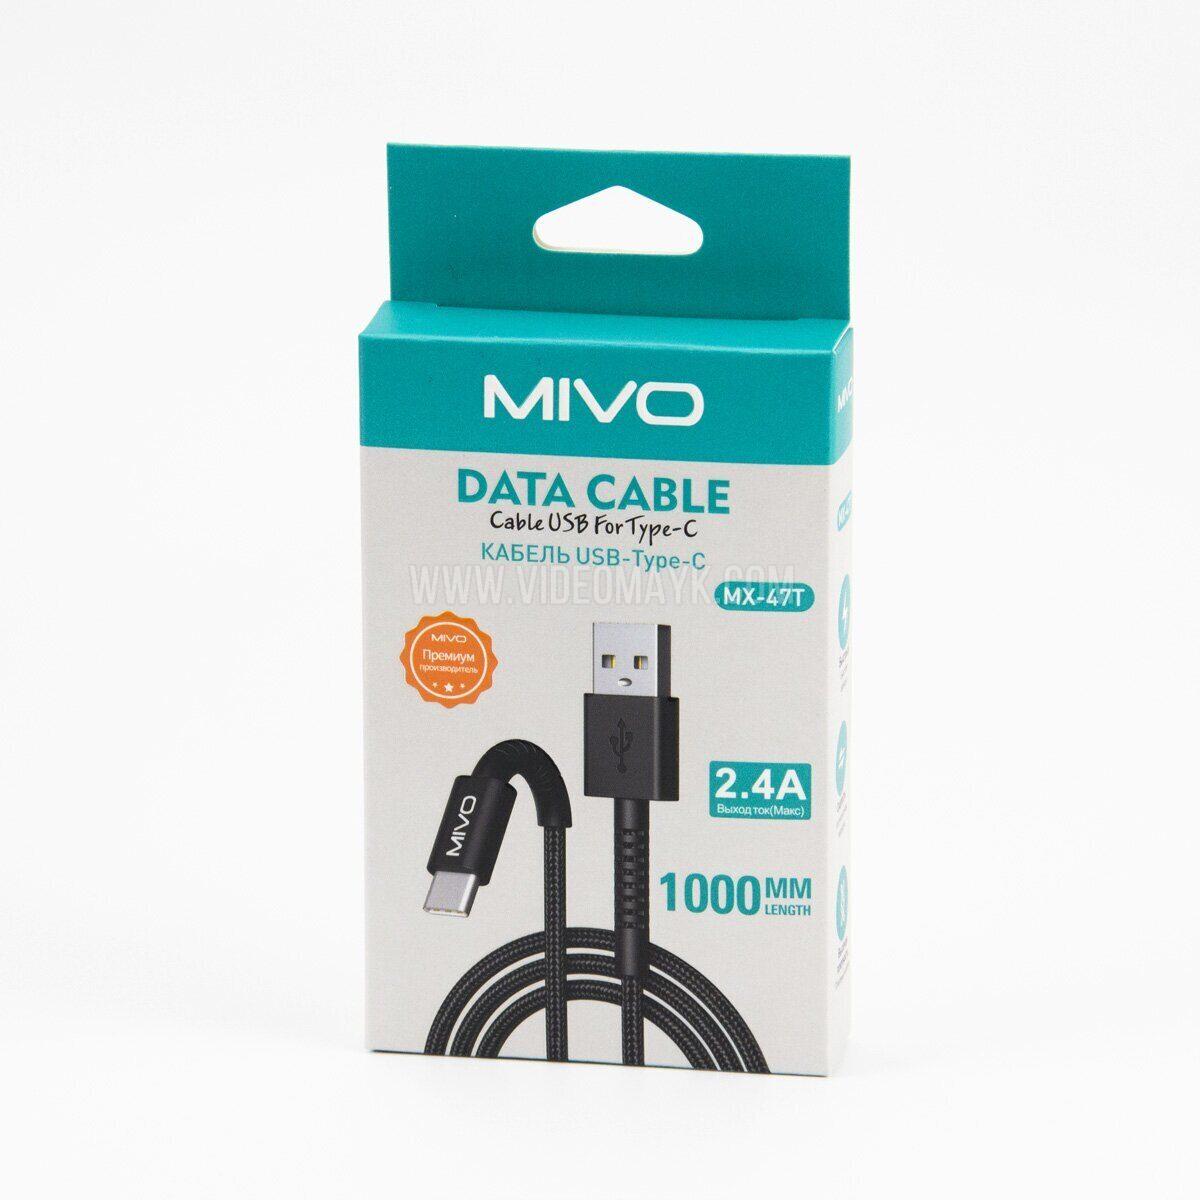 Дата-кабель Type-C Mivo MX-47T, нейлоновая оплетка, 2.4А, 1м